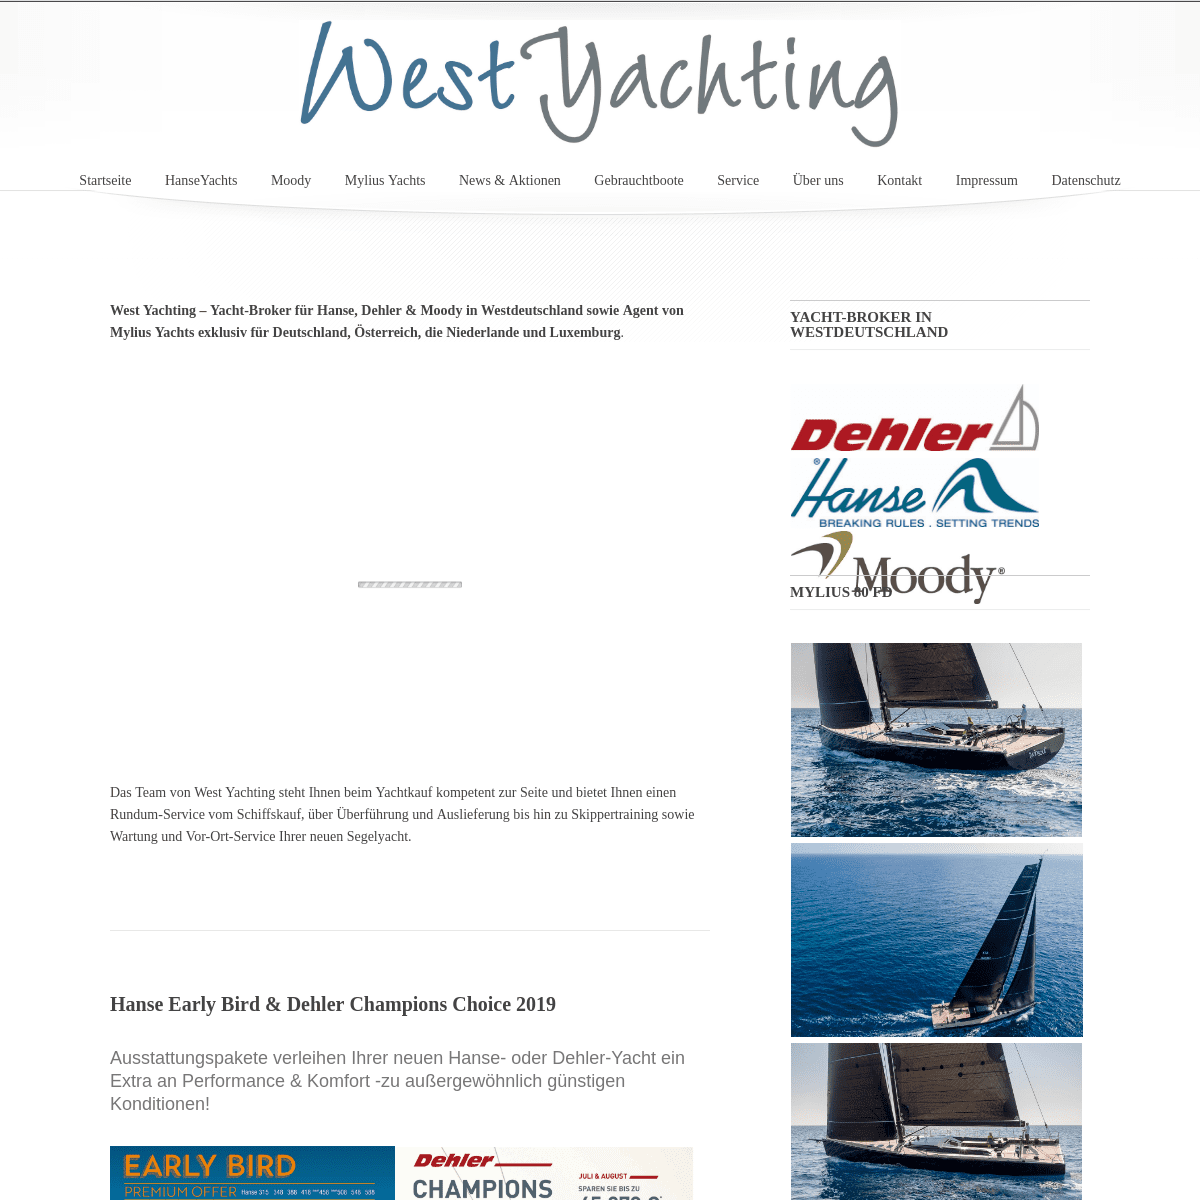 West Yachting - Yachthändler für Hanse, Dehler und Moody in Westdeutschland sowie exklusiver Agent für Mylius Yachts in Deutschl